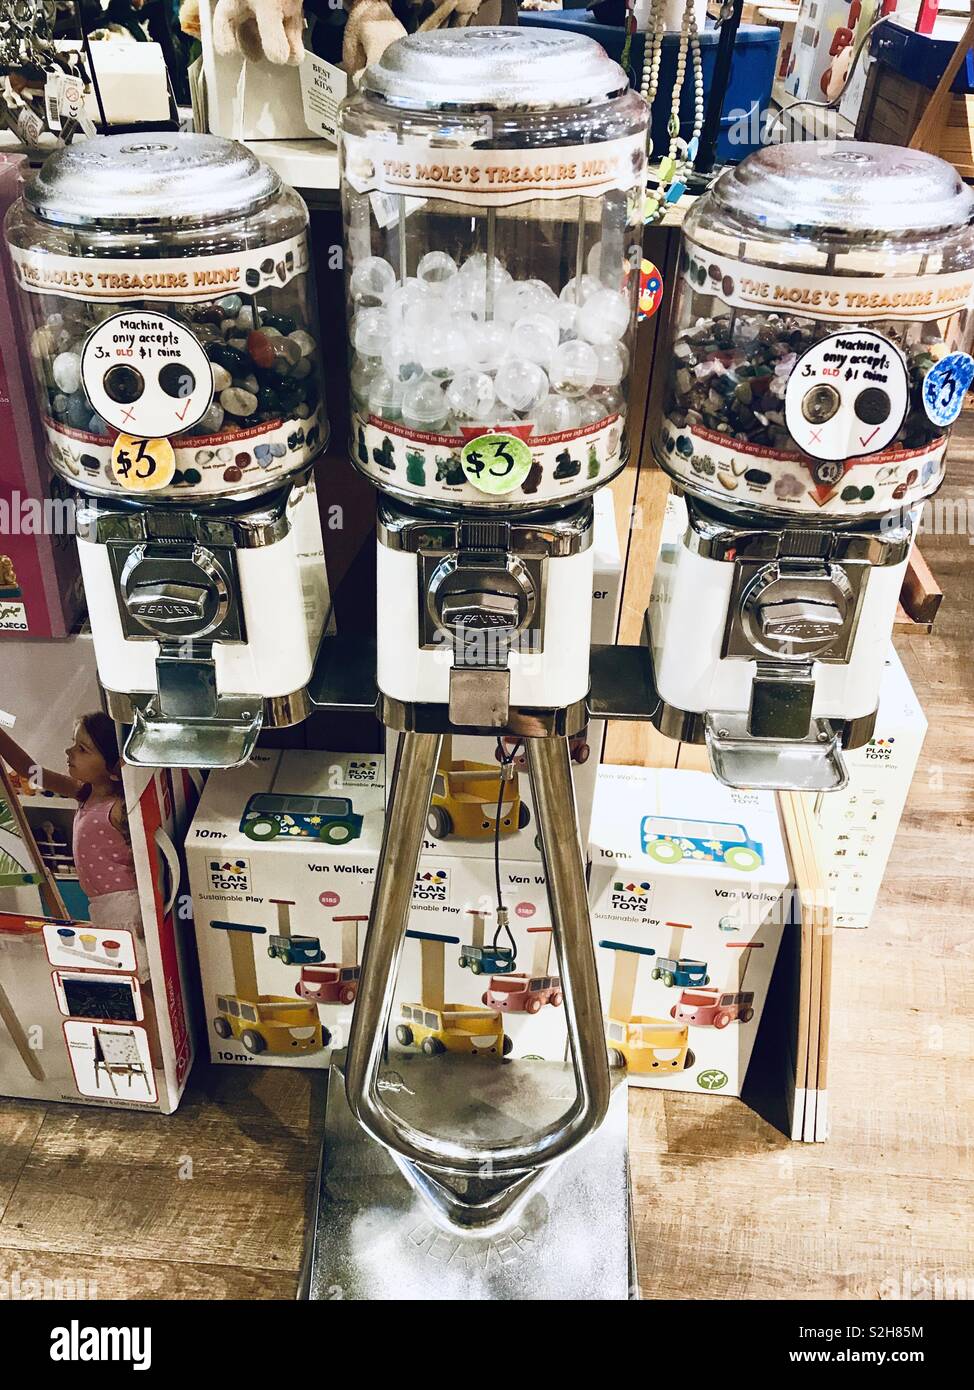 Gumball Getränkeautomaten Spender in einem Spielzeugladen Stockfoto